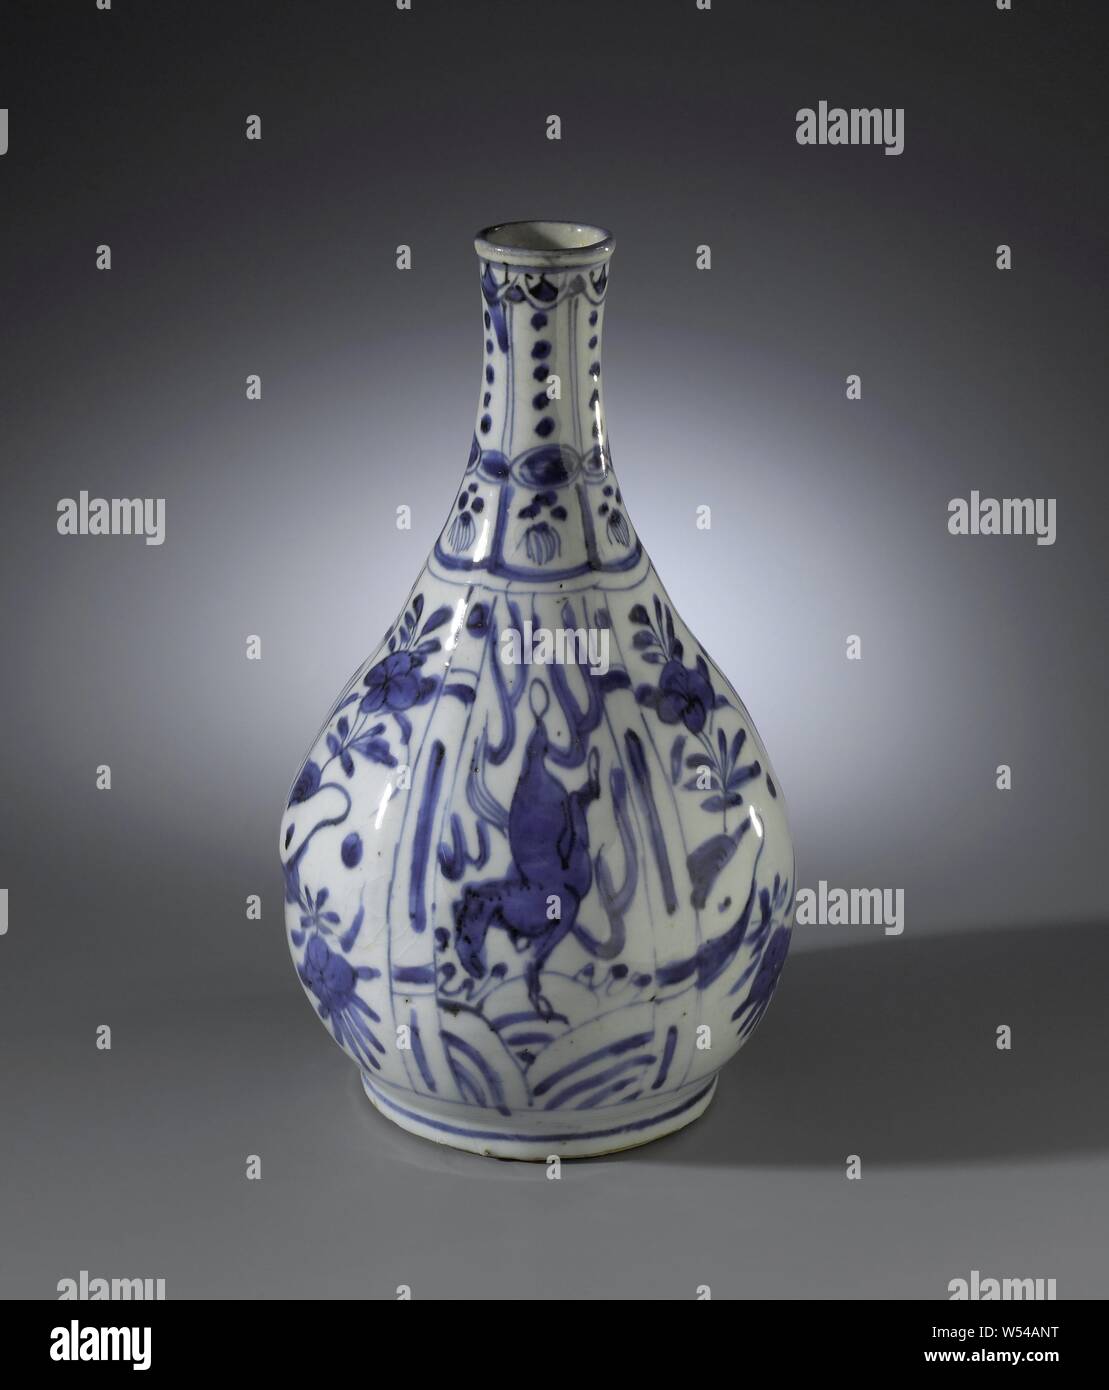 Pera-bottiglia a forma di vaso con cavalli e fiore spray, bottiglia a forma di vaso di porcellana con una pera-corpo sagomato, dipinta in underglaze blu. La parete è diviso in scomparti con alternanza di cavalli al galoppo e fiore spray, sul collo di una scatola decorazione con punti e spazzole. Porcellana crepata., anonimo, Cina, c. 1600 - c. 1649, Ming-dinastia (1368-1644) / Qing-dinastia (1644-1912) / Wanli-periodo (1573-1619) / Tianqi-periodo (1621-1627) / Chongzhen-periodo (1628-1644) / Shunzhi-periodo (1644-1661), porcellana (materiale), smalto, cobalto (minerali), di vetrificazione, h 26.2 cm d 3.9 cm d 16 cm d 10,7 Foto Stock